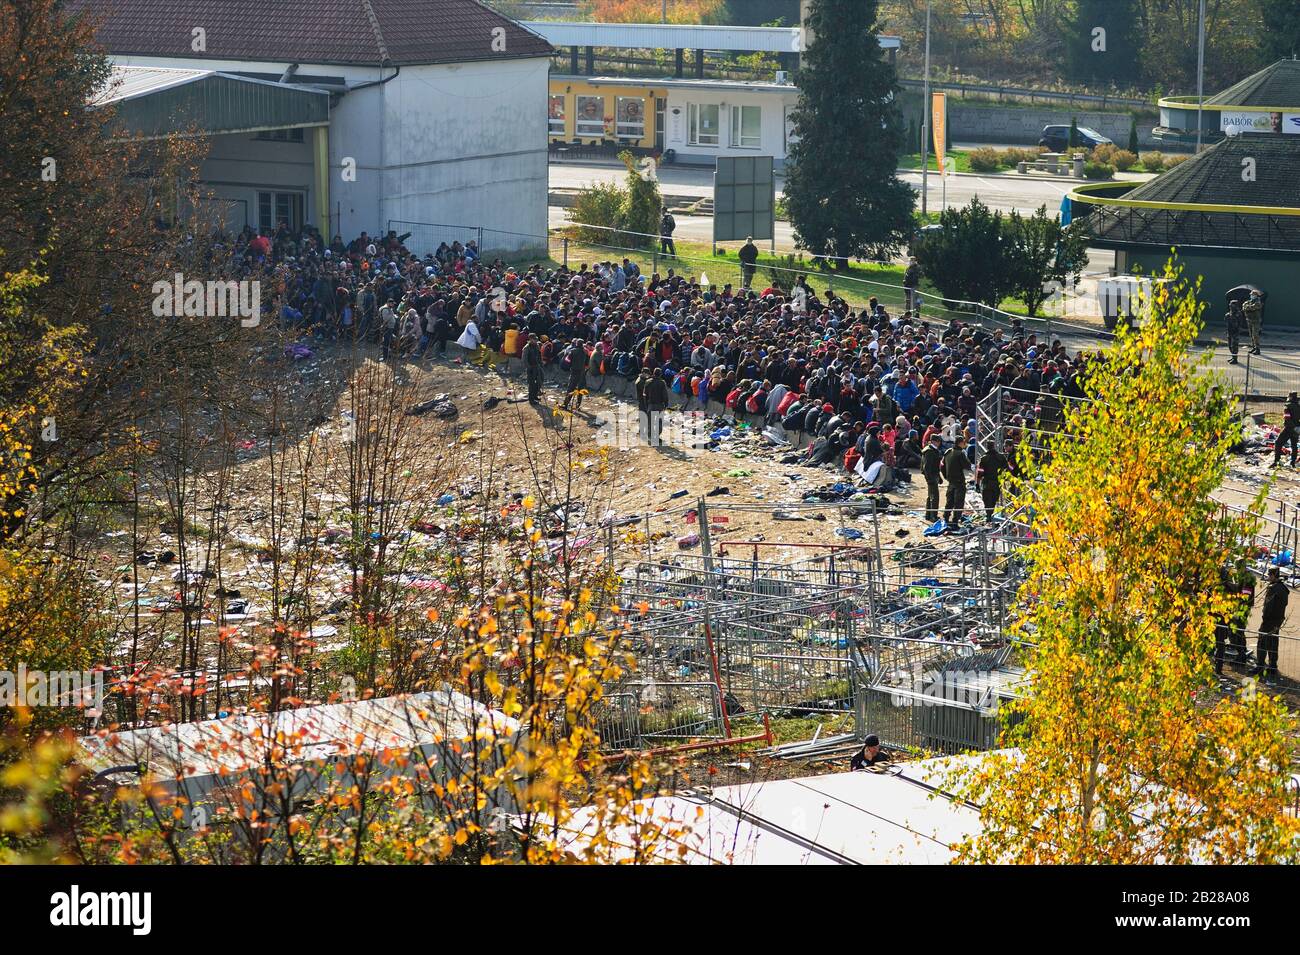 Spielfeld, Styria, Österreich. Archivbild vom 31. Oktober 2015. Flüchtlingswelle erreicht den Grenzübergang Spielfeld in der Styria. Stockfoto